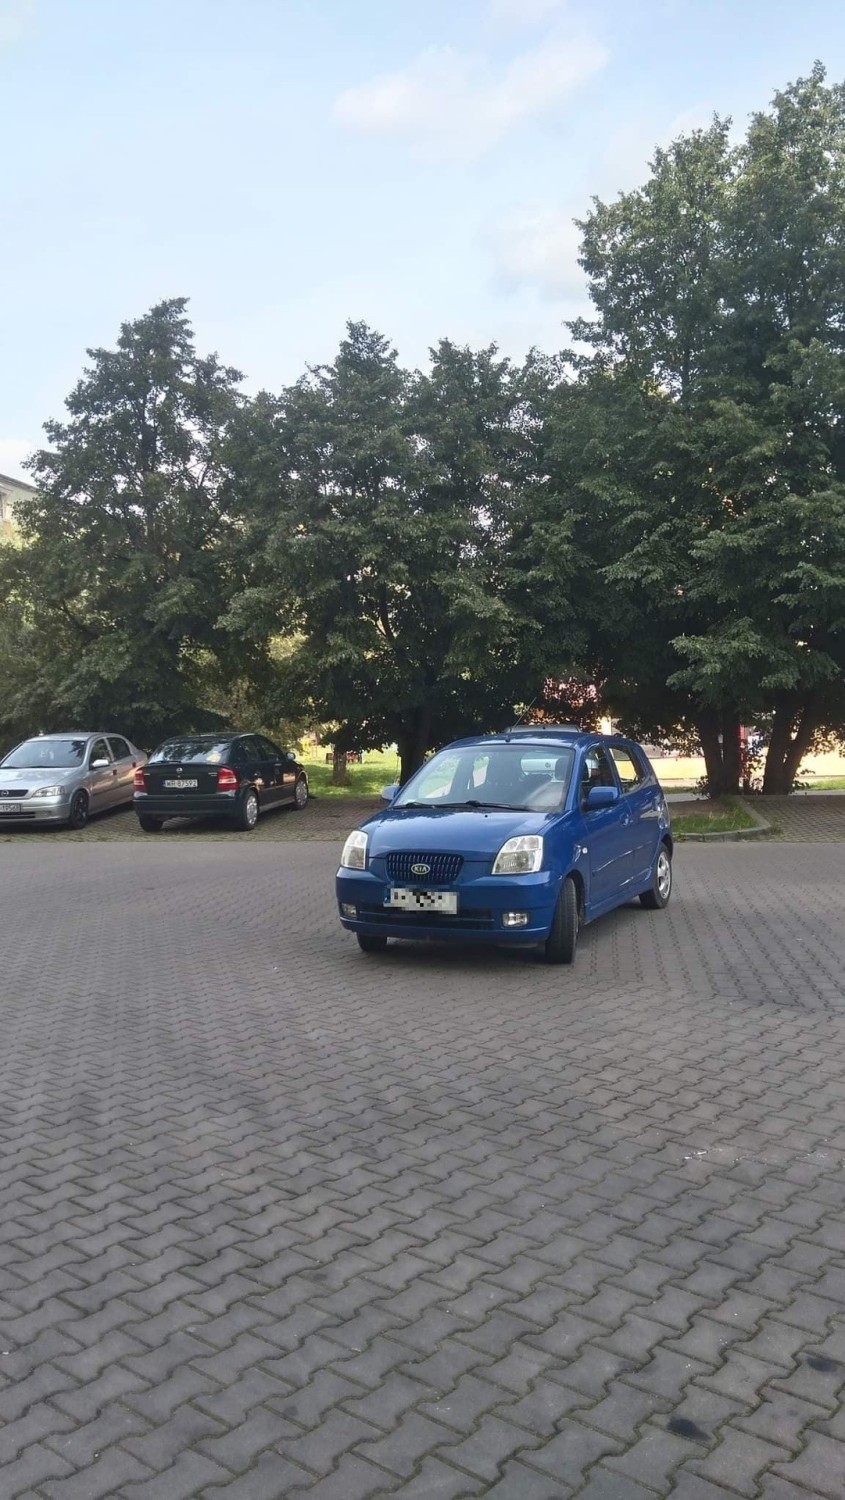 Zobacz też: Mistrzowie parkowania w Radomiu. Zobacz zdjęcia!...